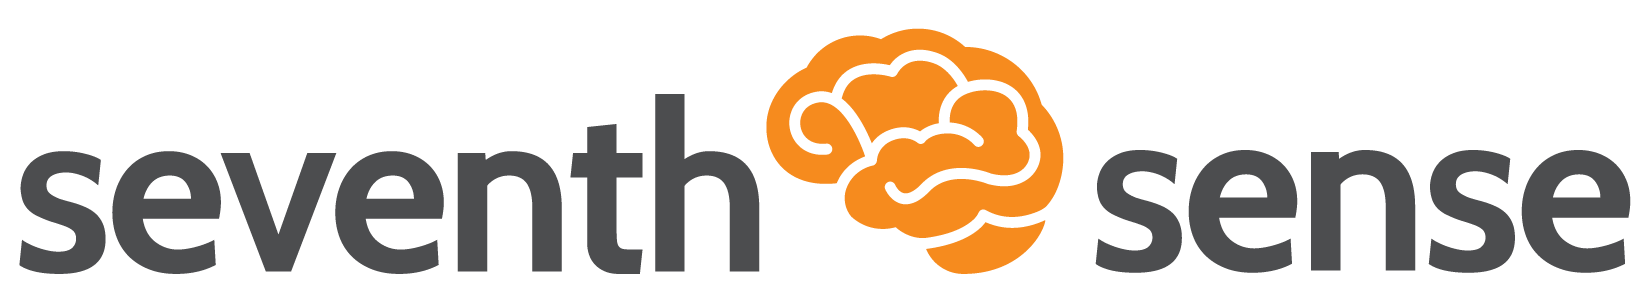 seventh-sense-logo